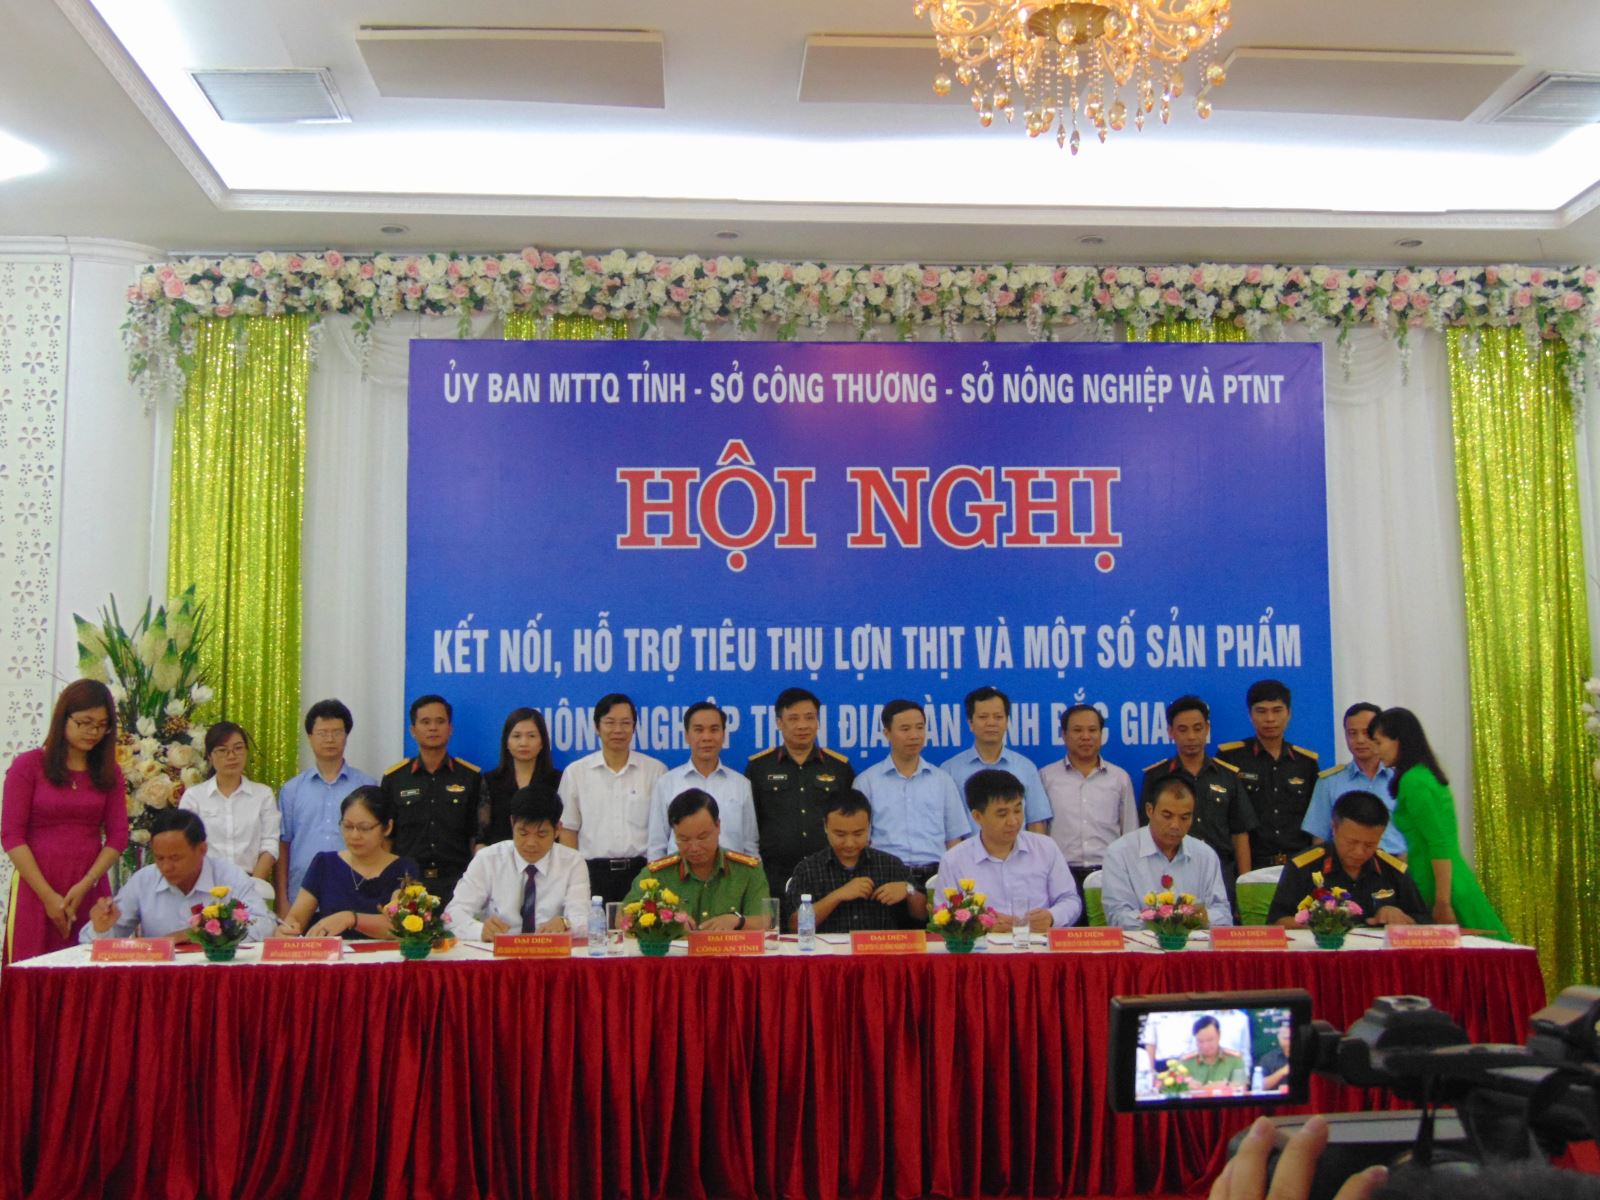 Bắc Giang: Tổ chức Hội nghị Kết nối, hỗ trợ tiêu thụ thịt lợn